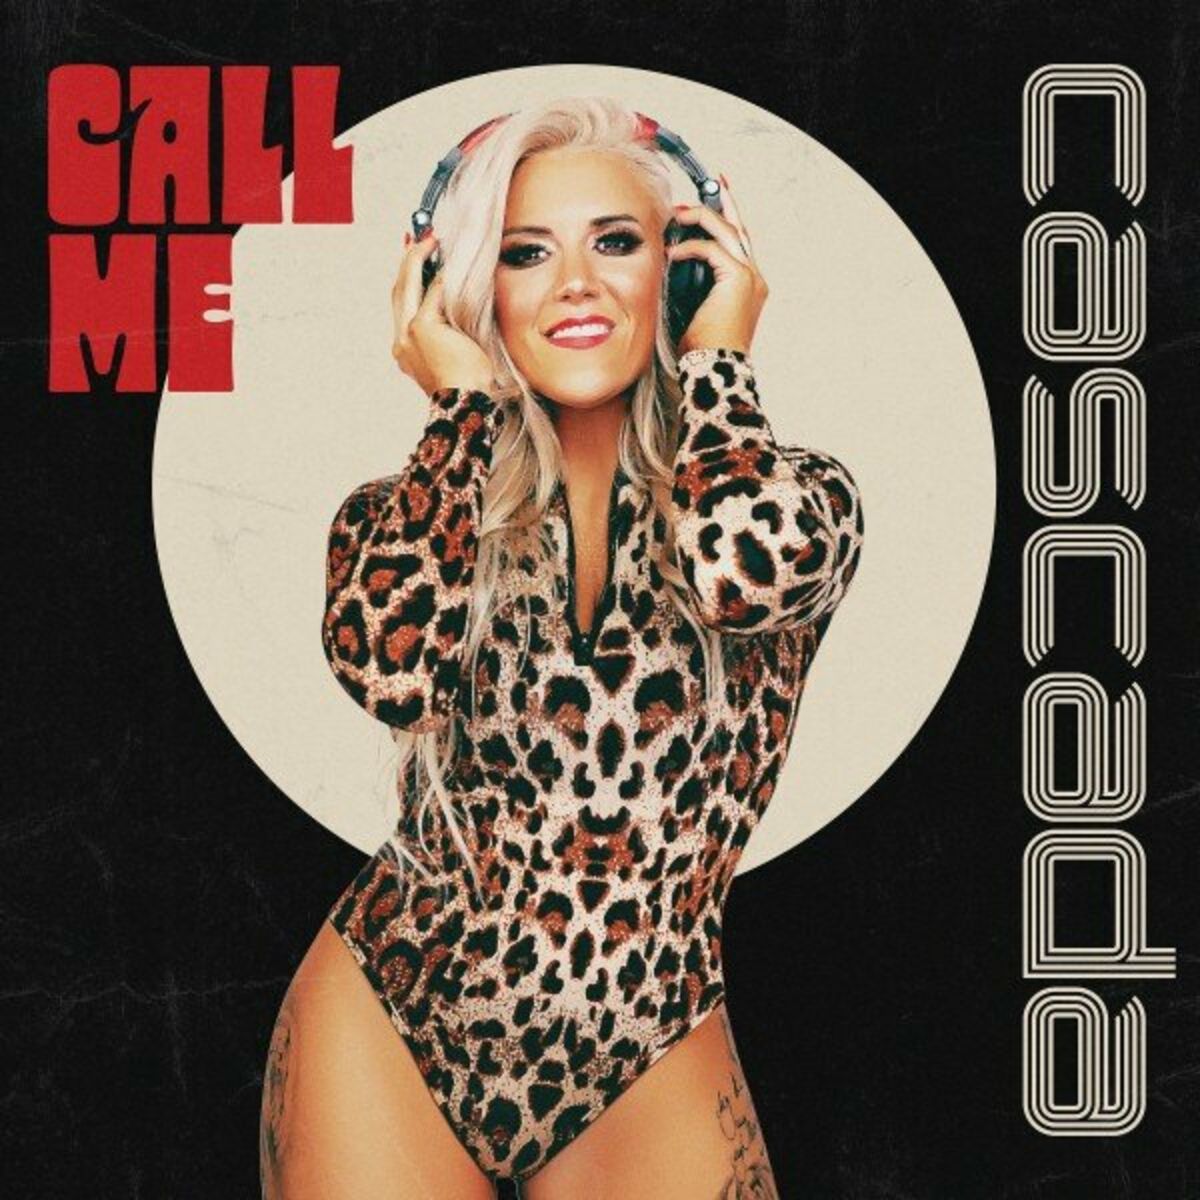 Cascada nuevo álbum - Call Me: canciones y letras | Deezer